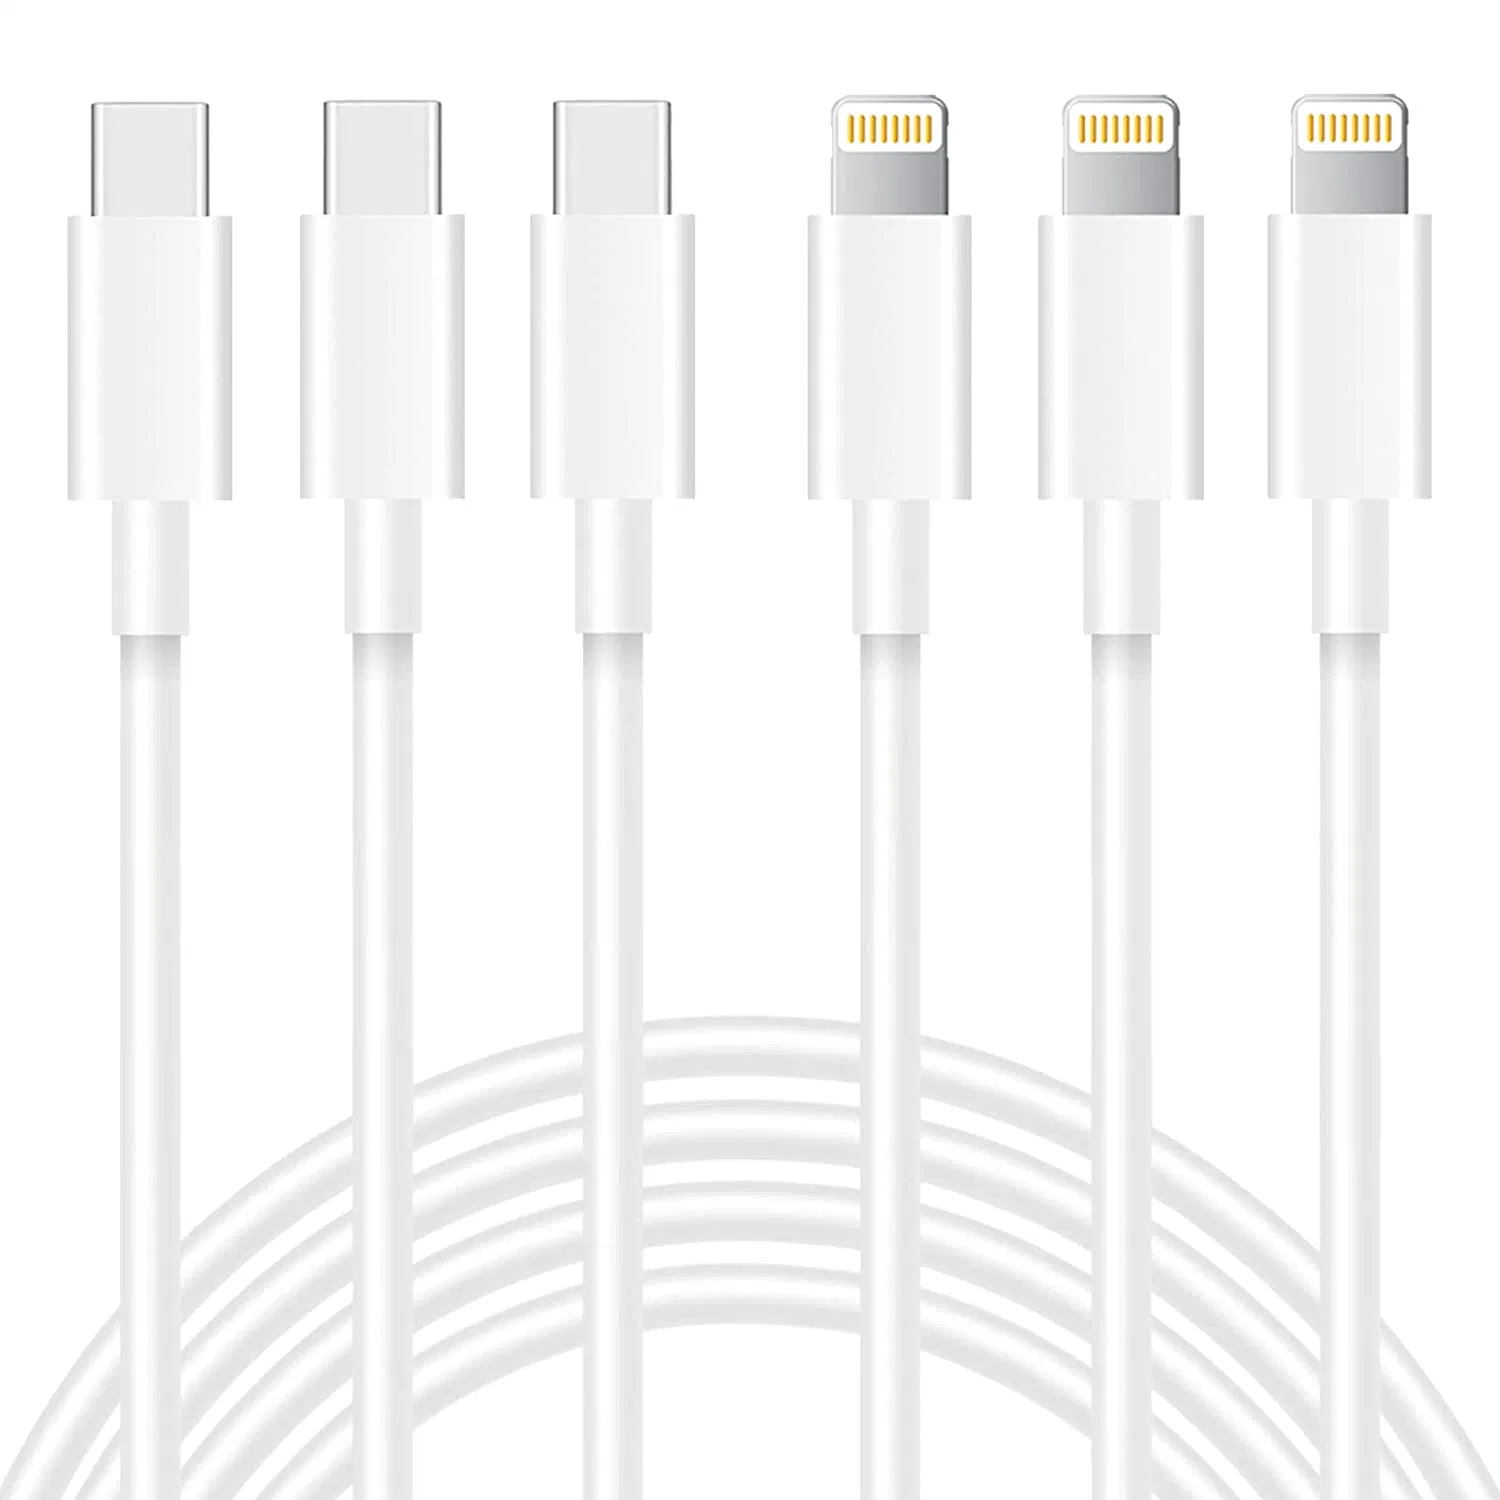 Teléfono celular cable de carga USB cable cargador para iPhone celular Accesorios para teléfonos